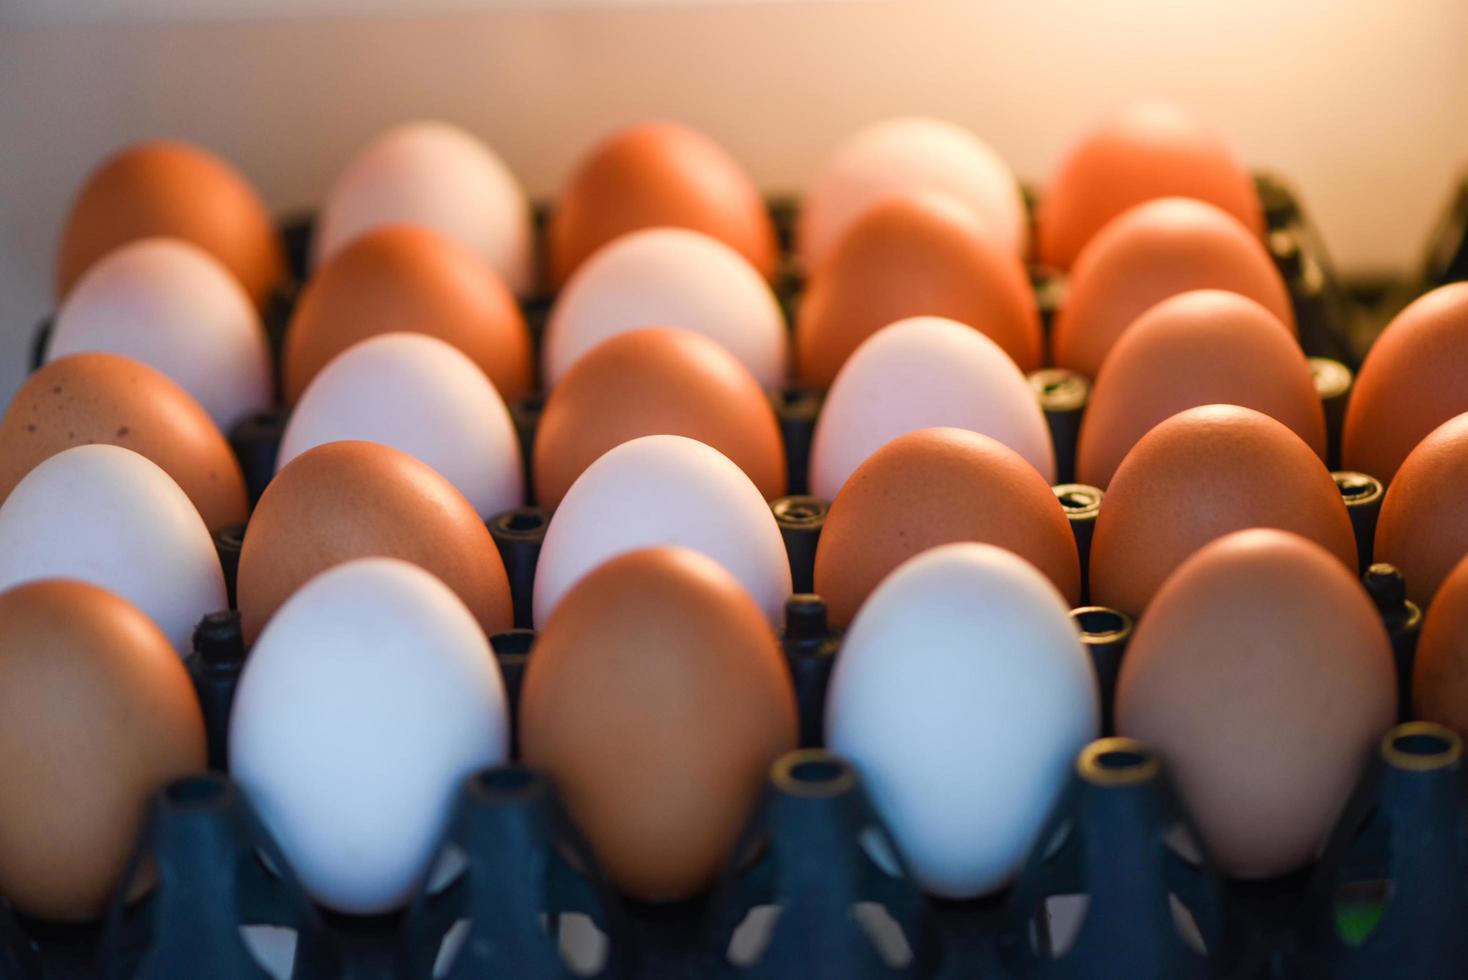 eieren in de koelkast voor opslag in de keuken thuis verse kippeneieren en eendeneieren in doos foto